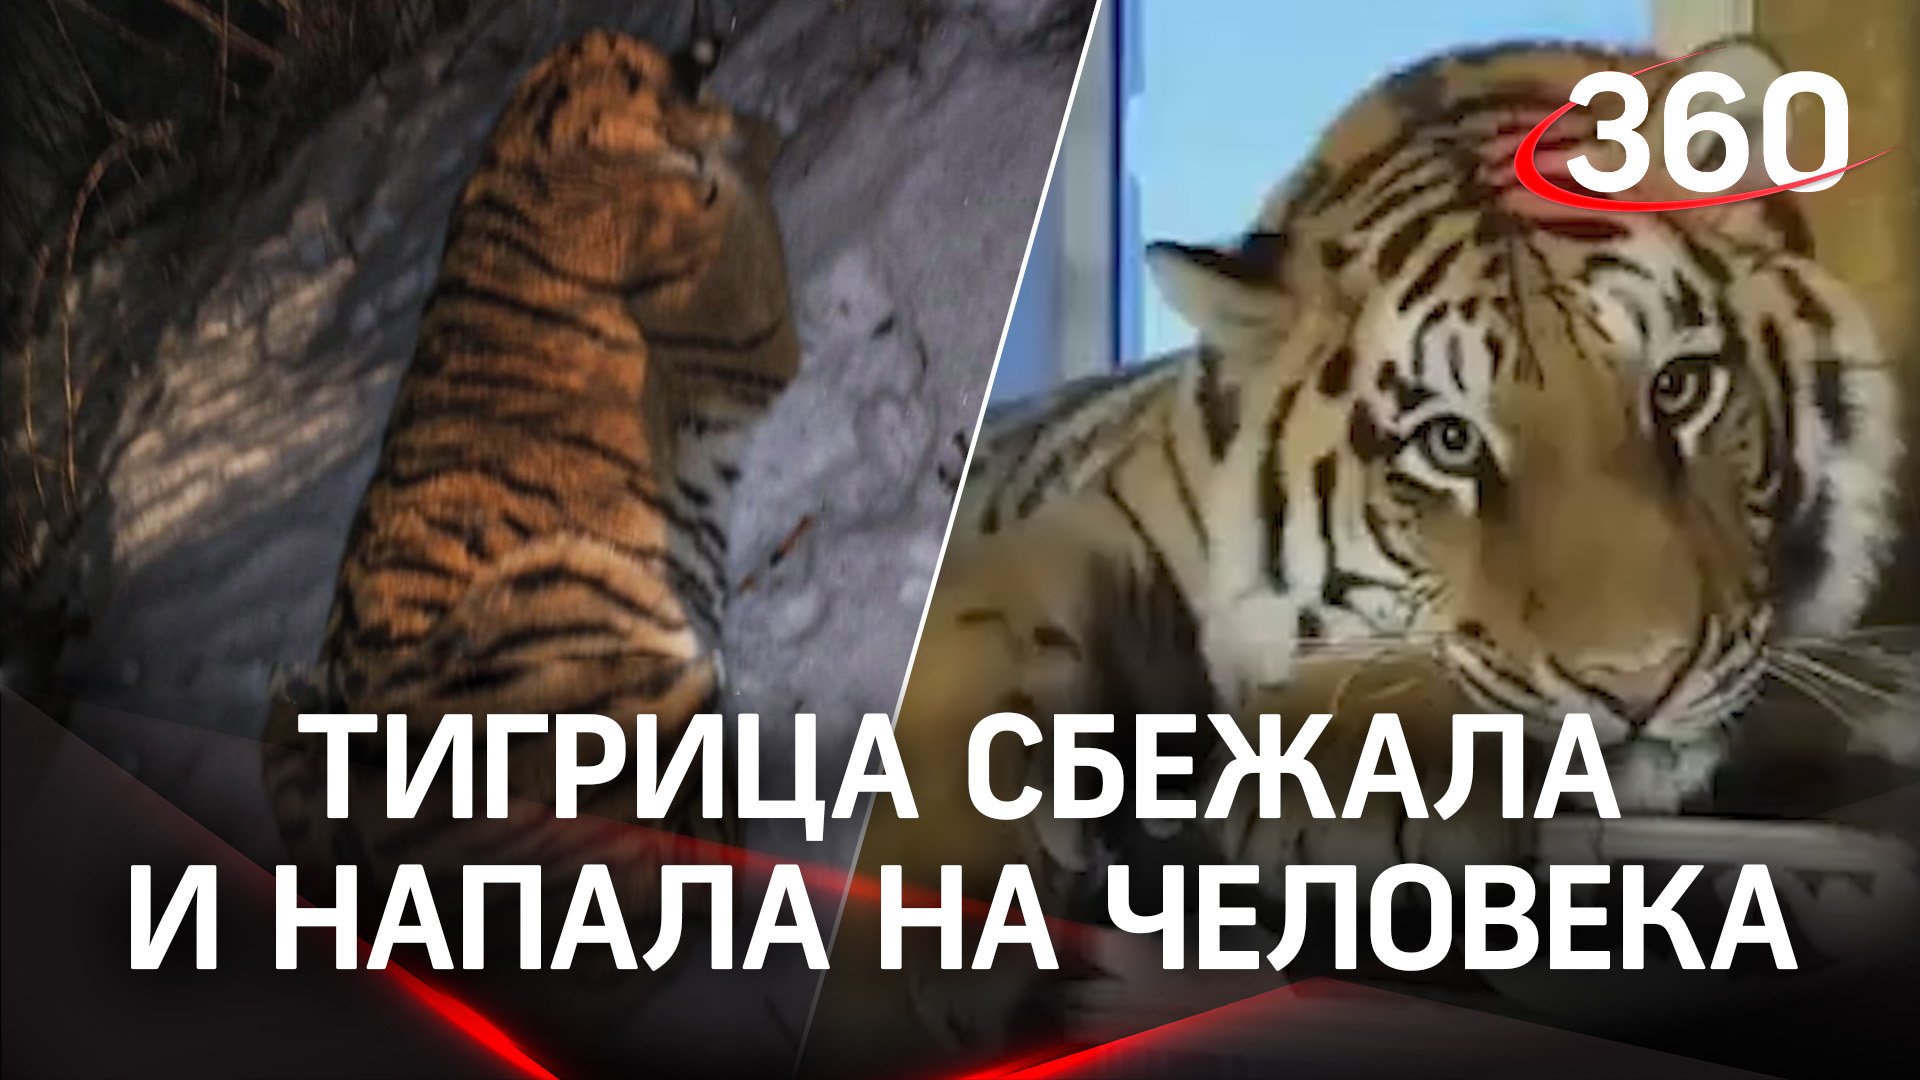 Тигрица напала на прохожего под Рязанью - сбежала из дома. Пострадавший в больнице